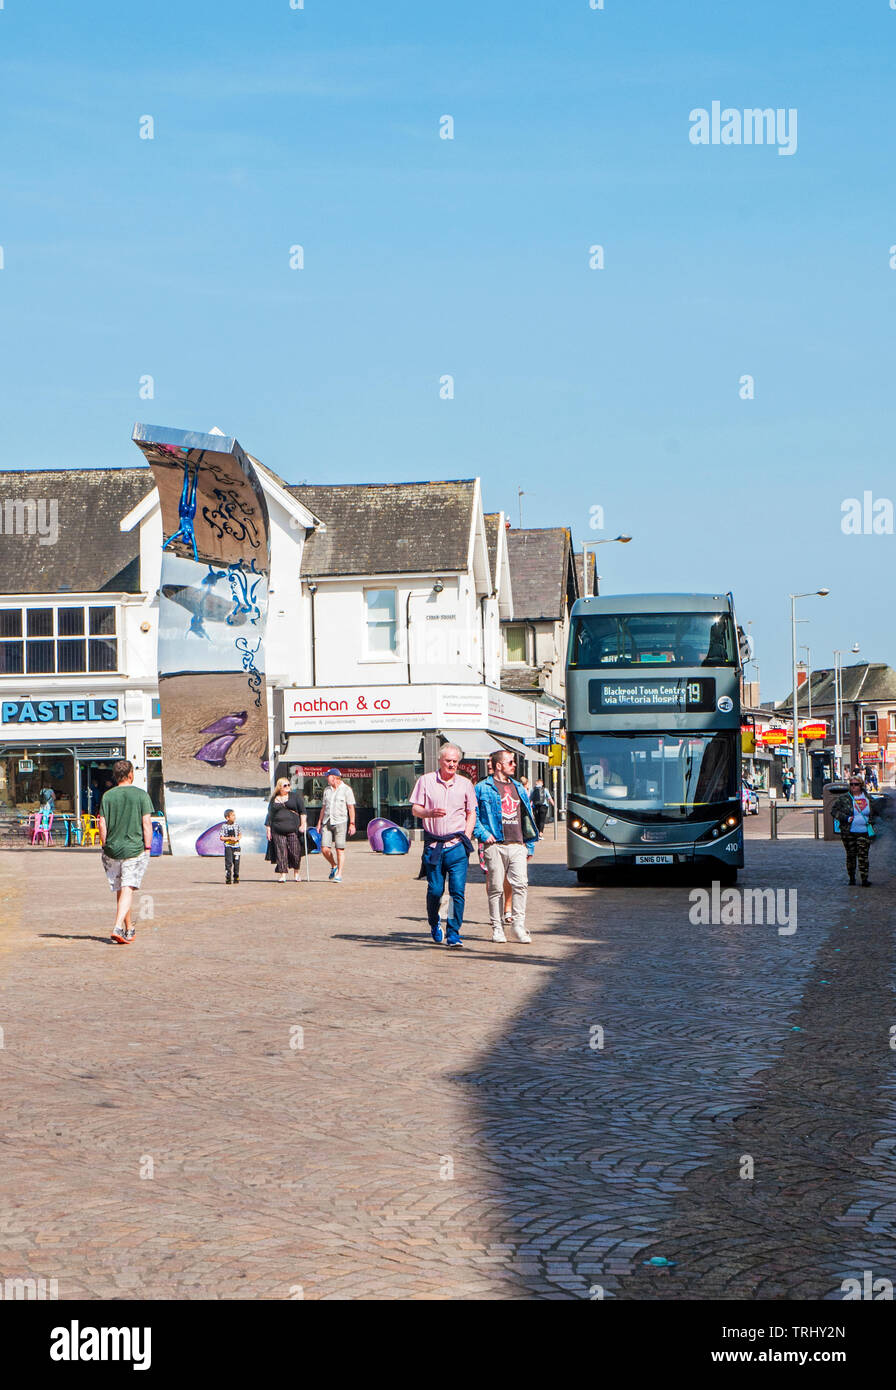 Blackpool Bus durch Fußgängerzone Bereich umgeleitet nach Straßensperrungen im Stadtzentrum durch Festlegung neuer tramtrack Stockfoto